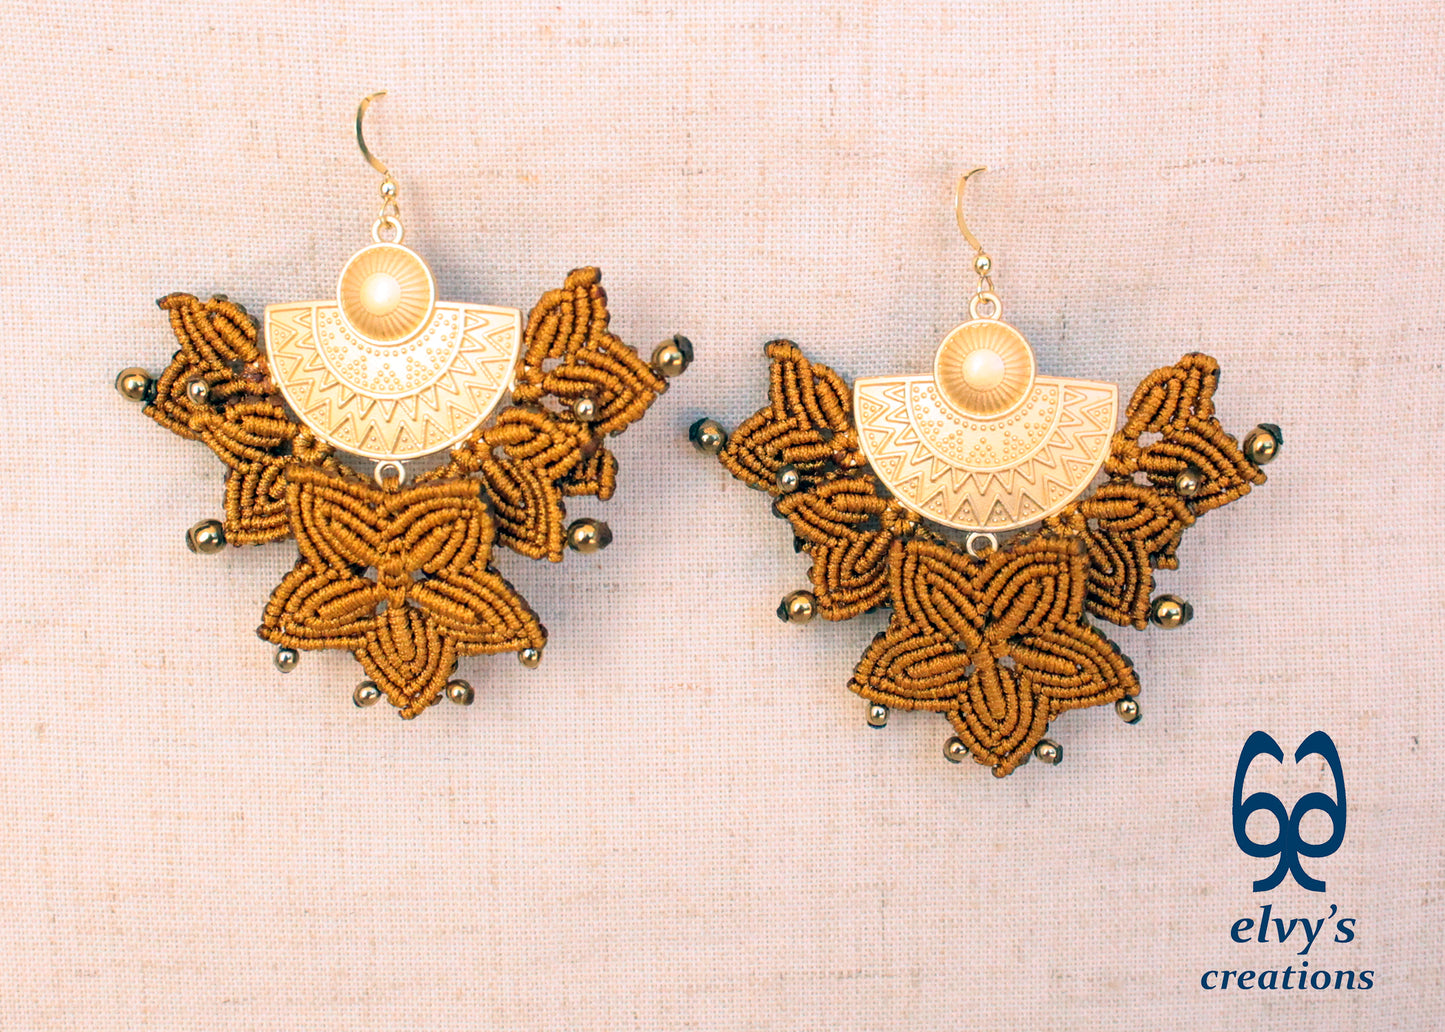 Handmade Gold Macrame Earrings, Dangle Hematite Gemstone Beads Earrings, Birthday Gift for Women